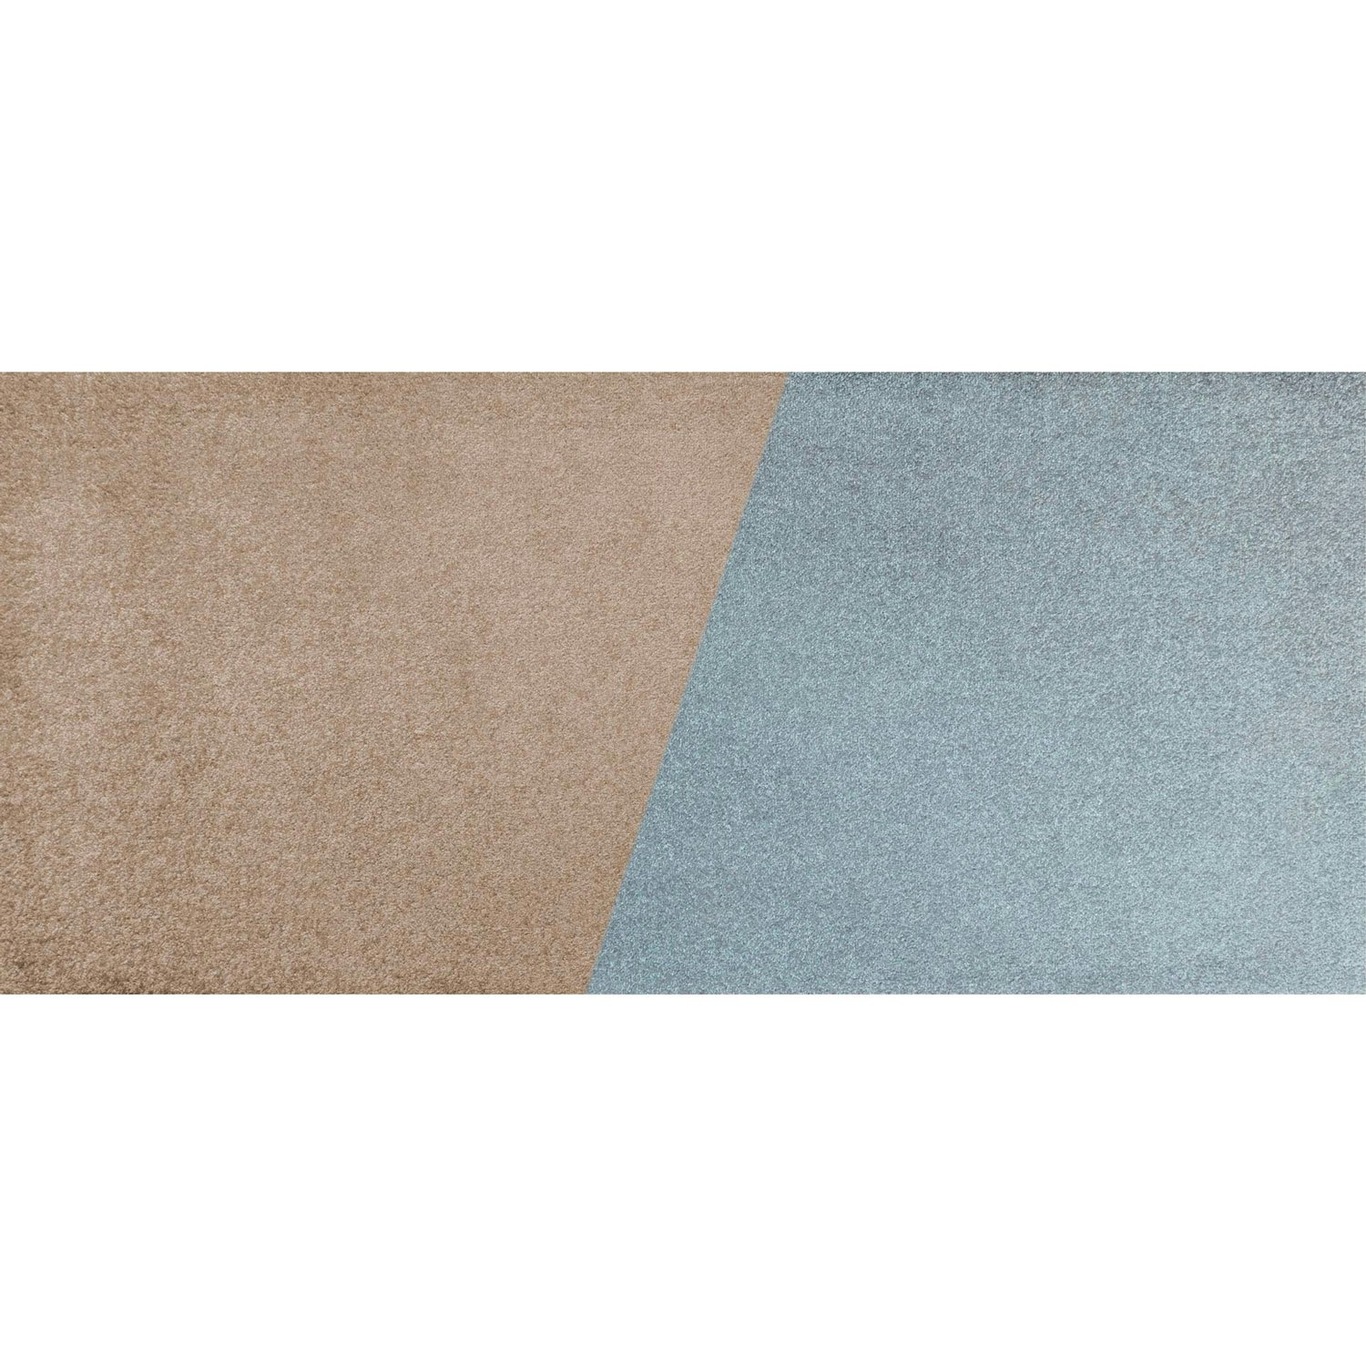 Duet Matto 70x150 cm, Slate Blue